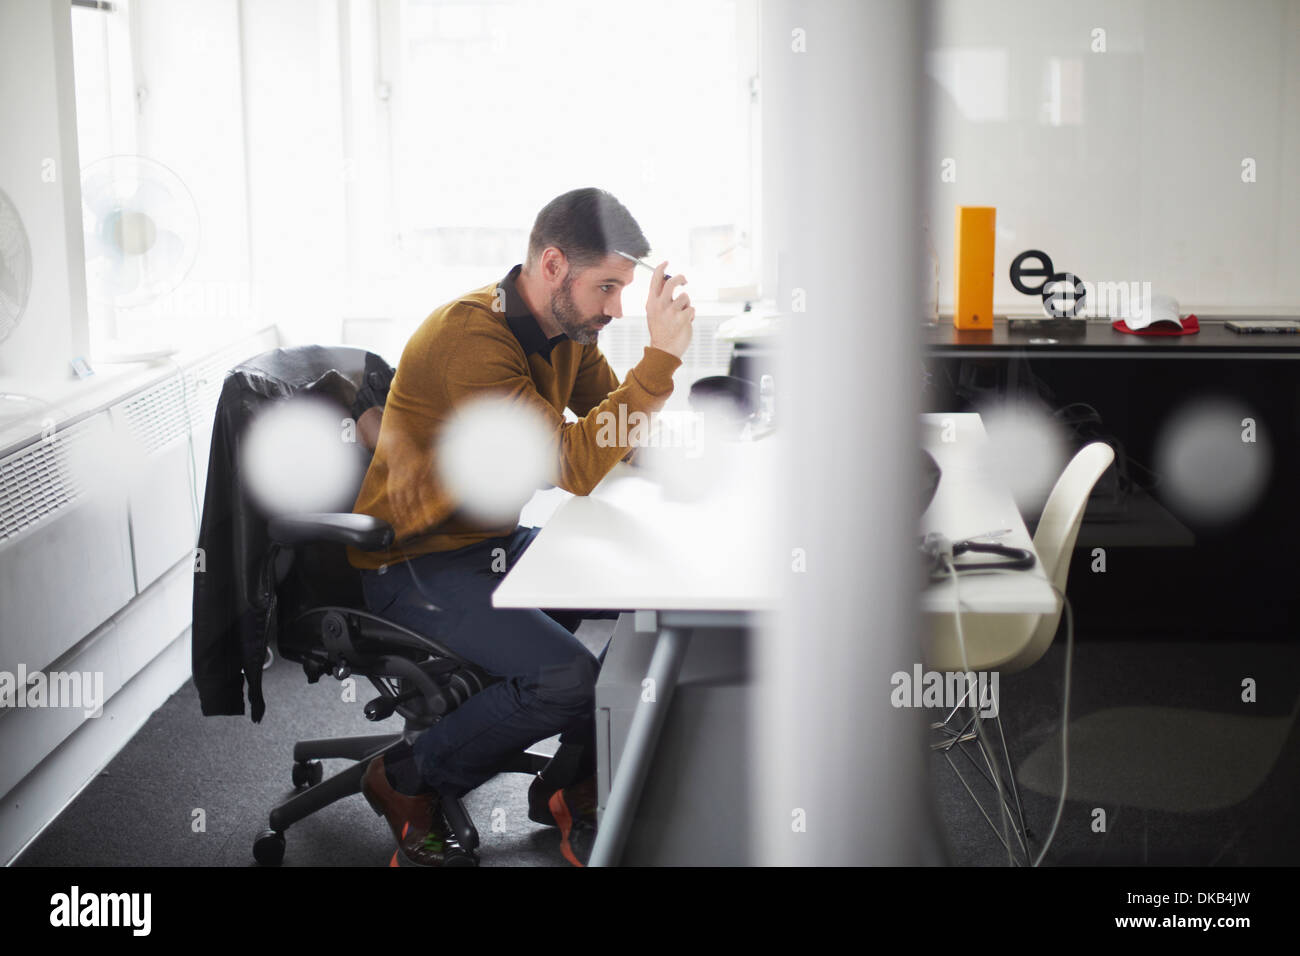 Businessman working at desk Banque D'Images